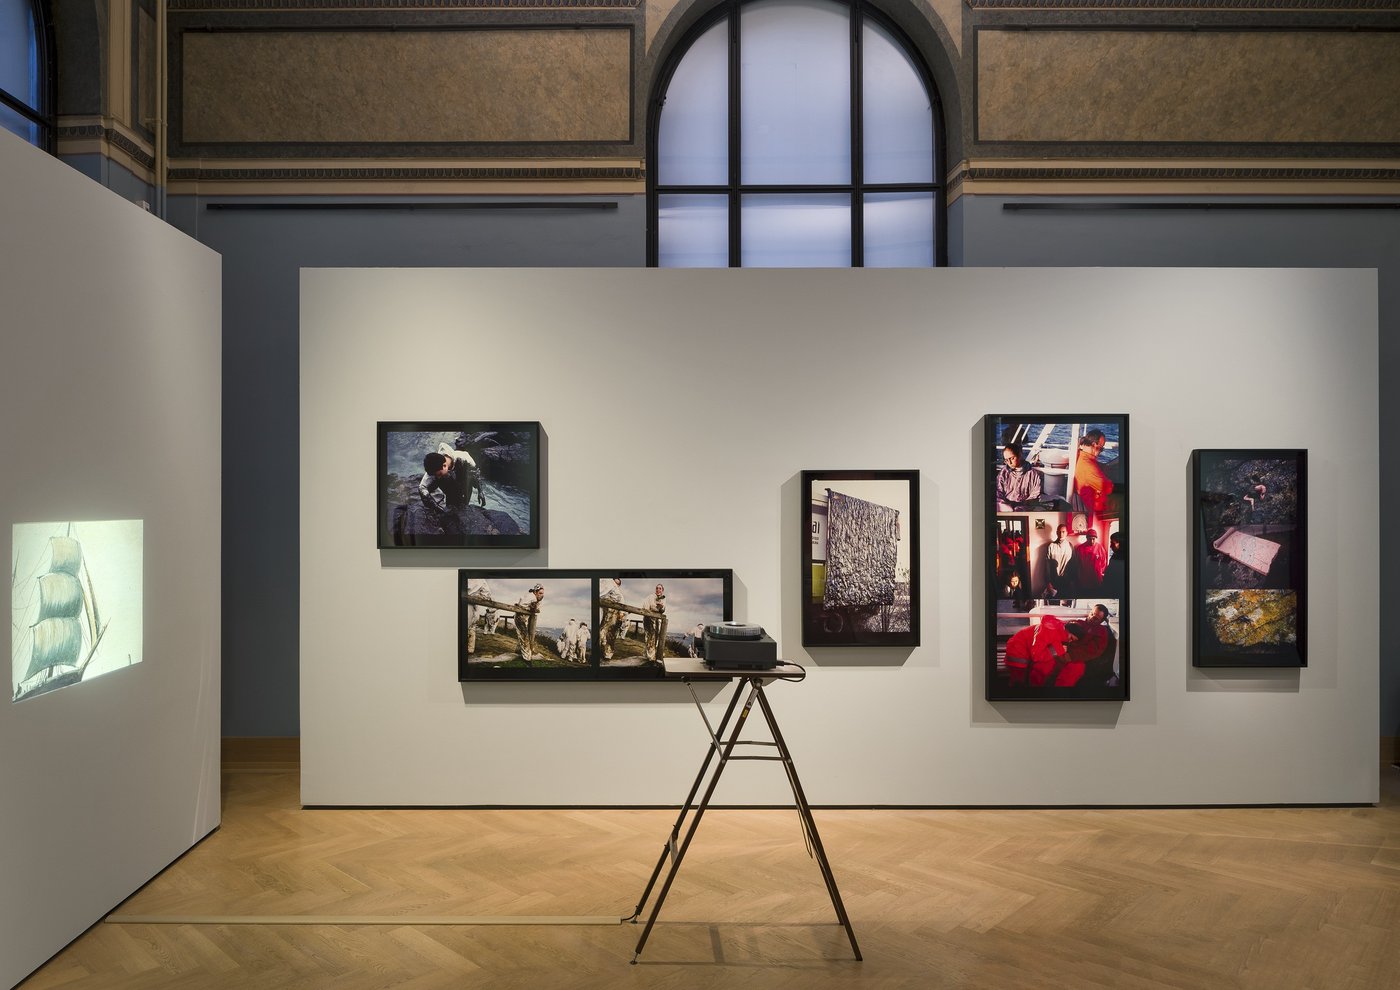 ein Ausstellungsraum mit mehreren Bildern an der Wand und einem Projektor